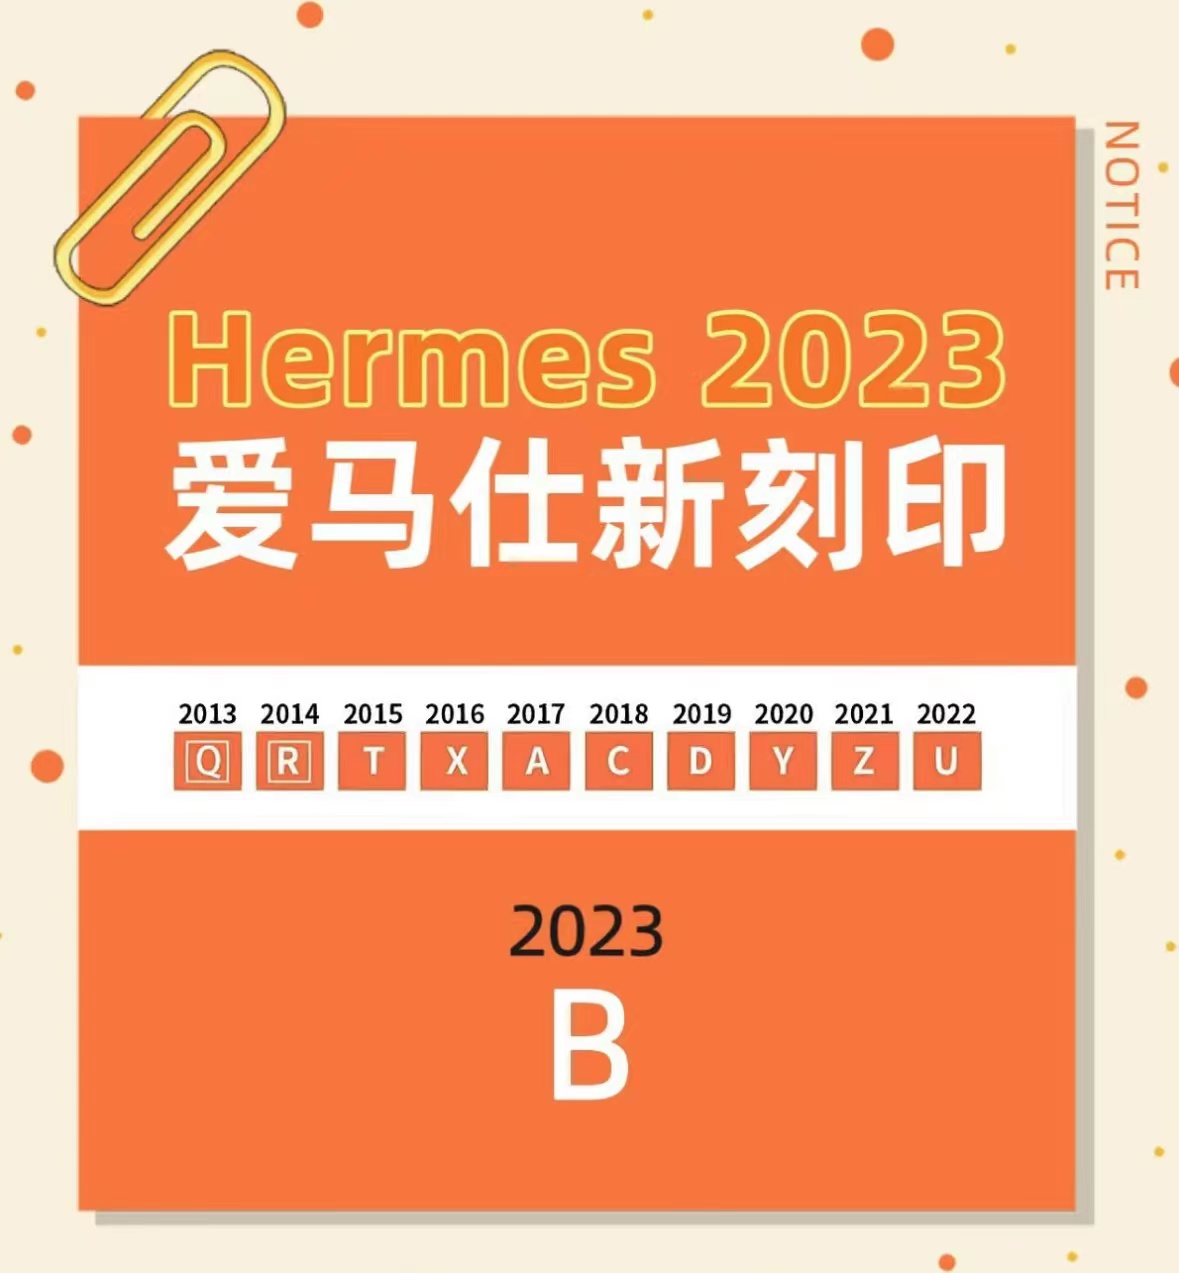 2023年爱马仕包包刻印 B刻 2022年爱马仕工匠号 HERMES 爱马仕2021刻印年份表